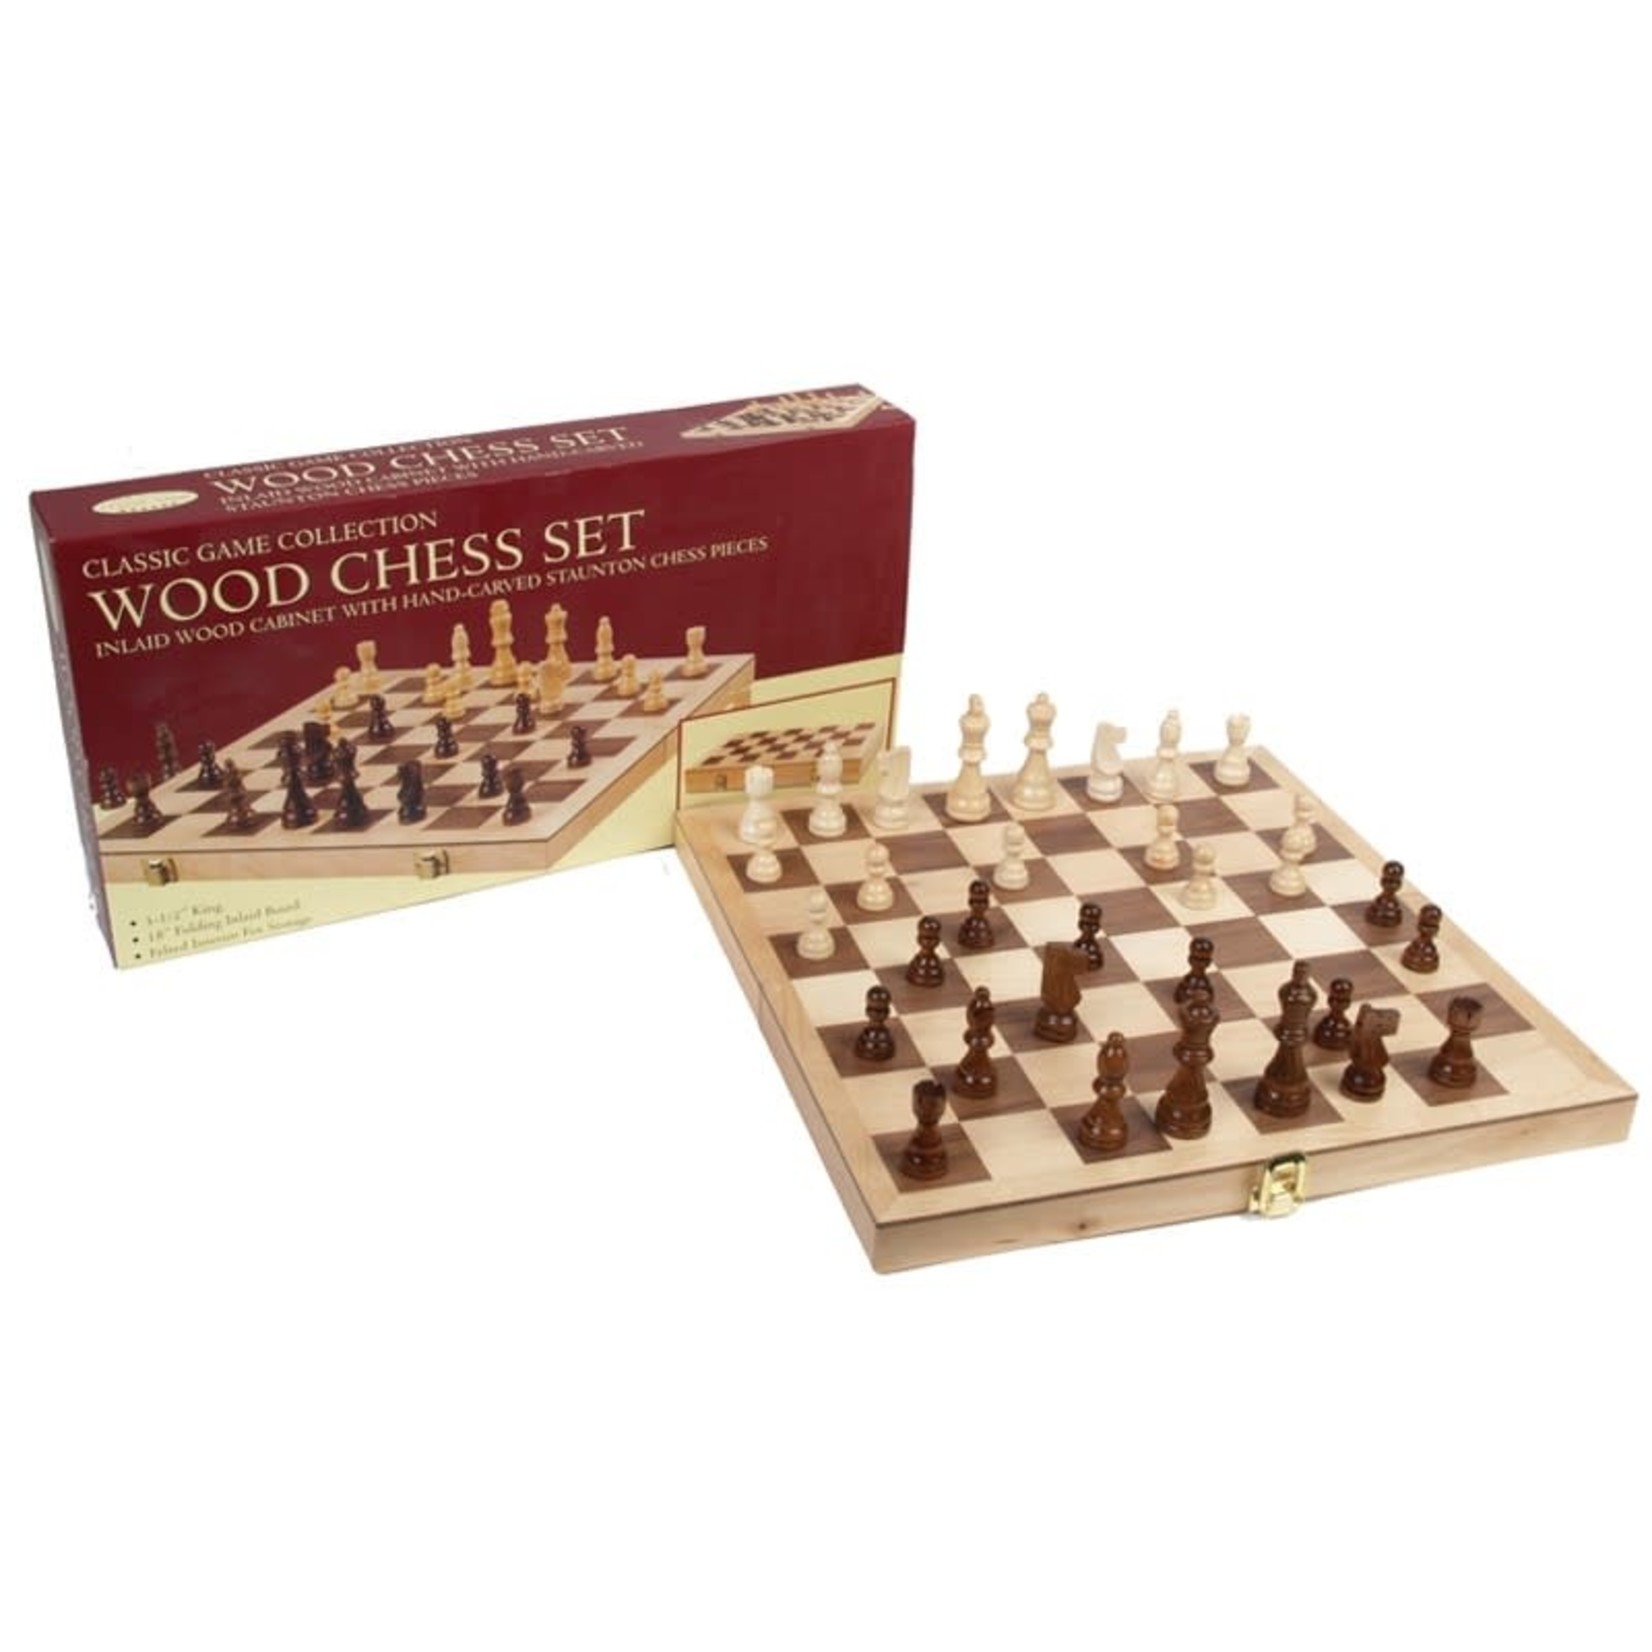 John Hansen Chess Set 10.5 in Box and Board